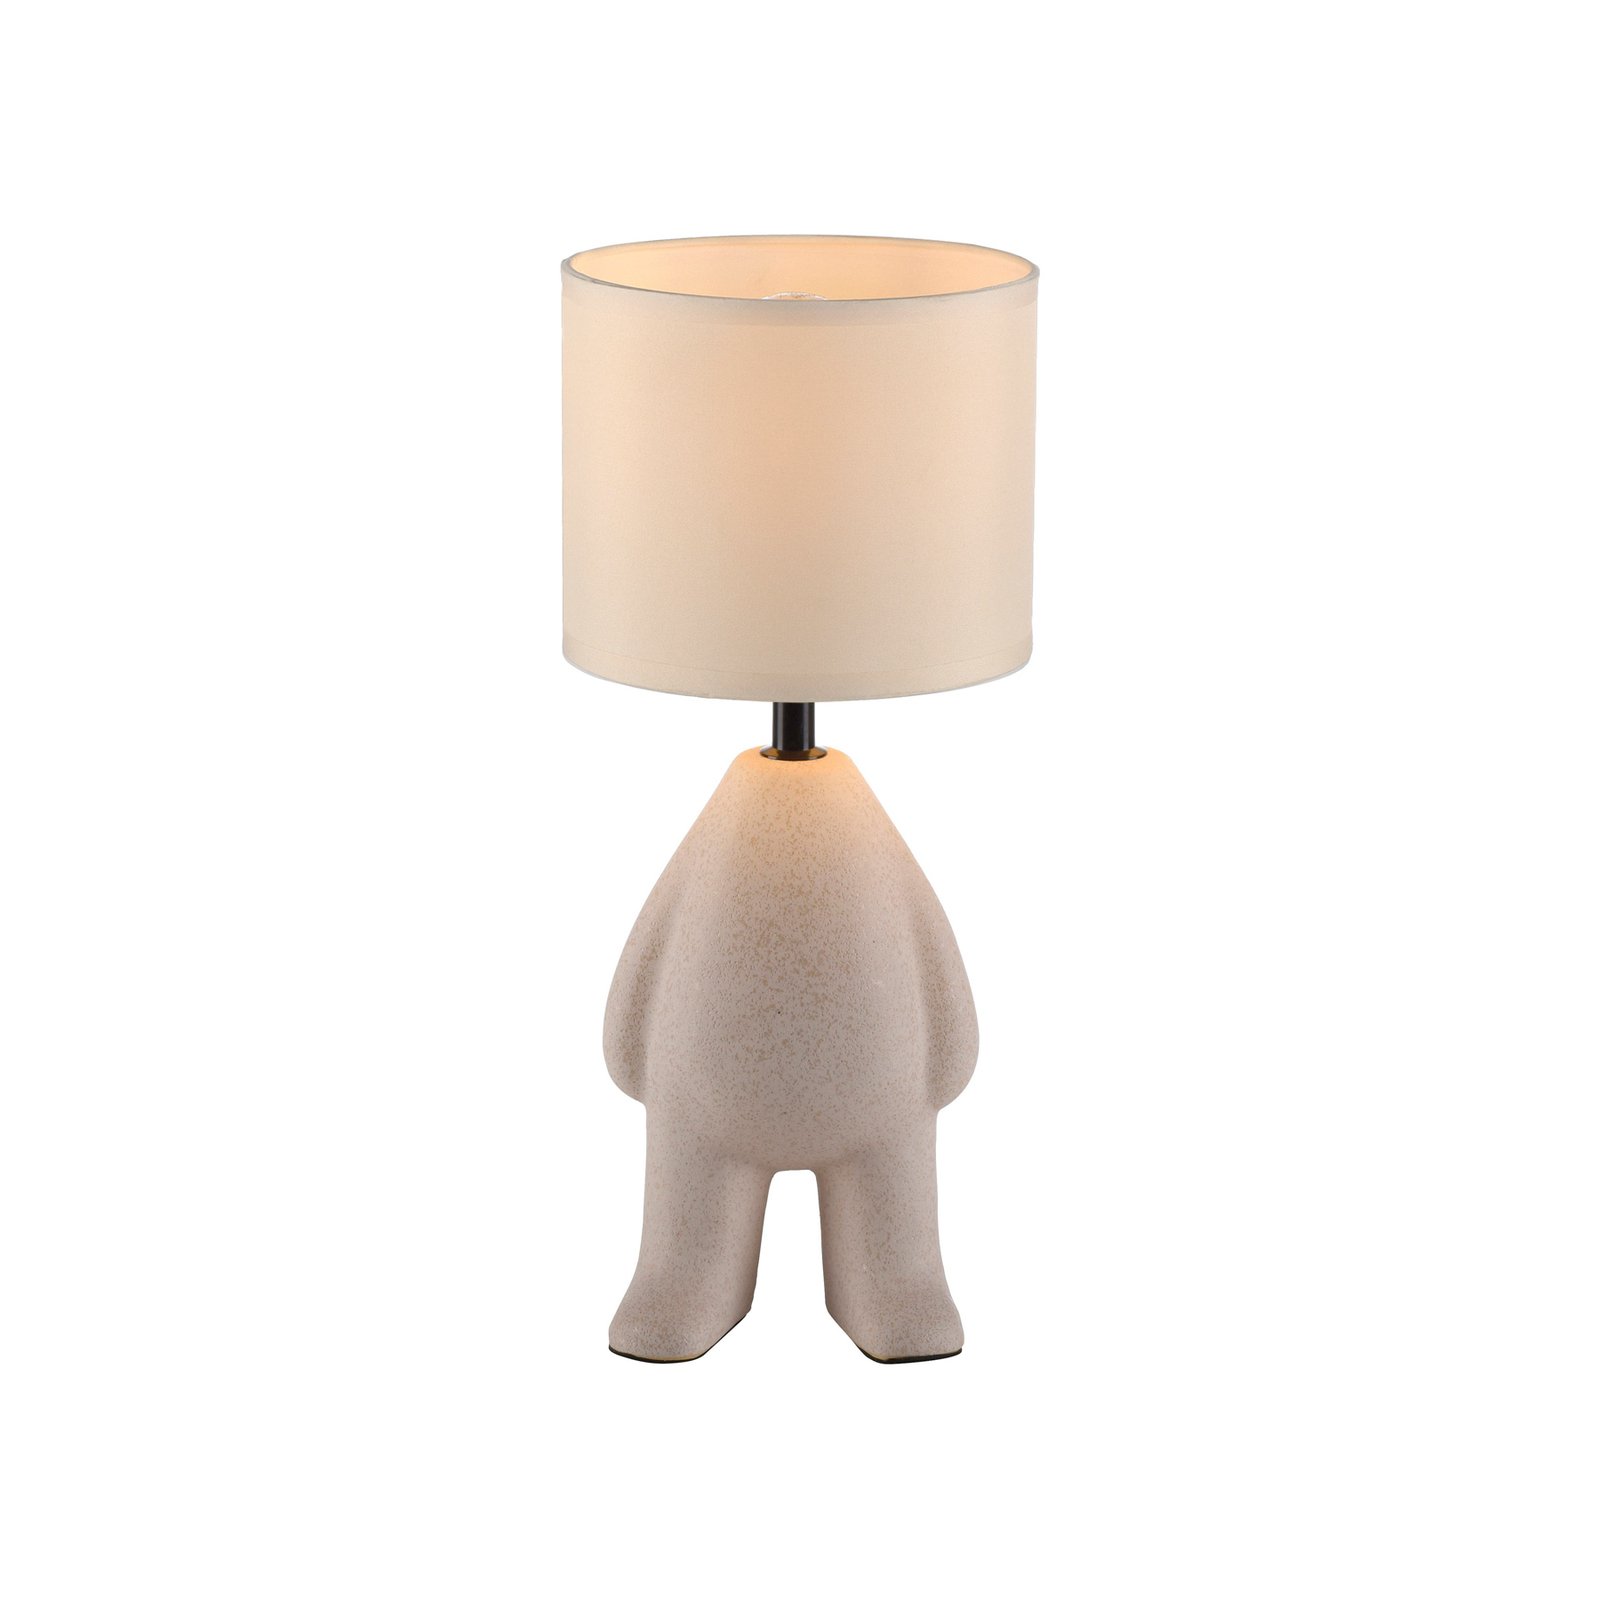 JUST LIGHT. Lampa stołowa Ted, ceramiczna, stojąca, piaskowy beż